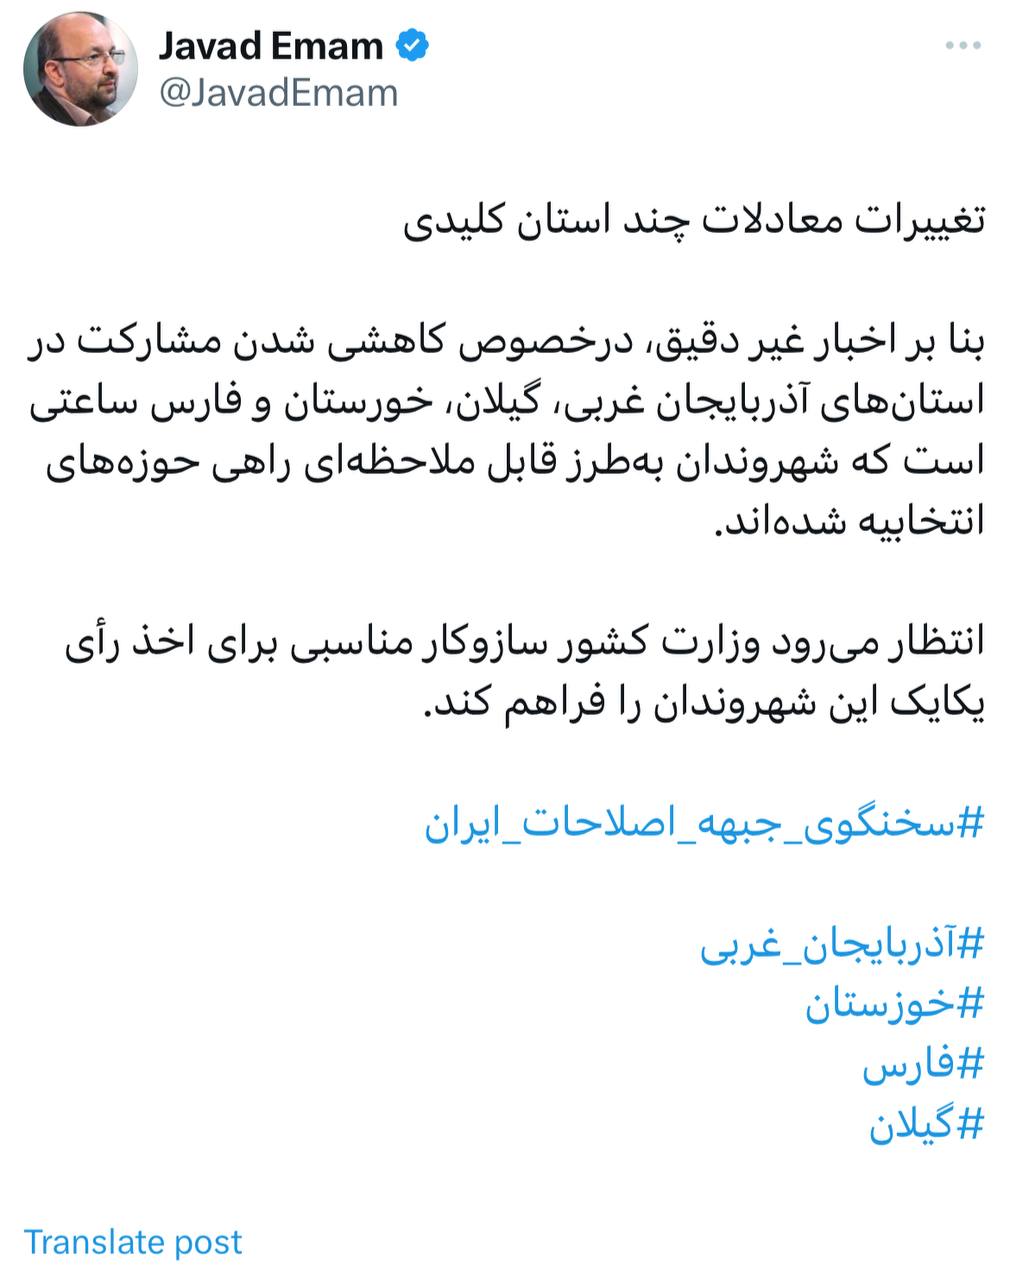 ادعای سخنگوی جبهه اصلاحات درباره مشارکت در آذربایجان غربی، گیلان، خوزستان و فارس 2